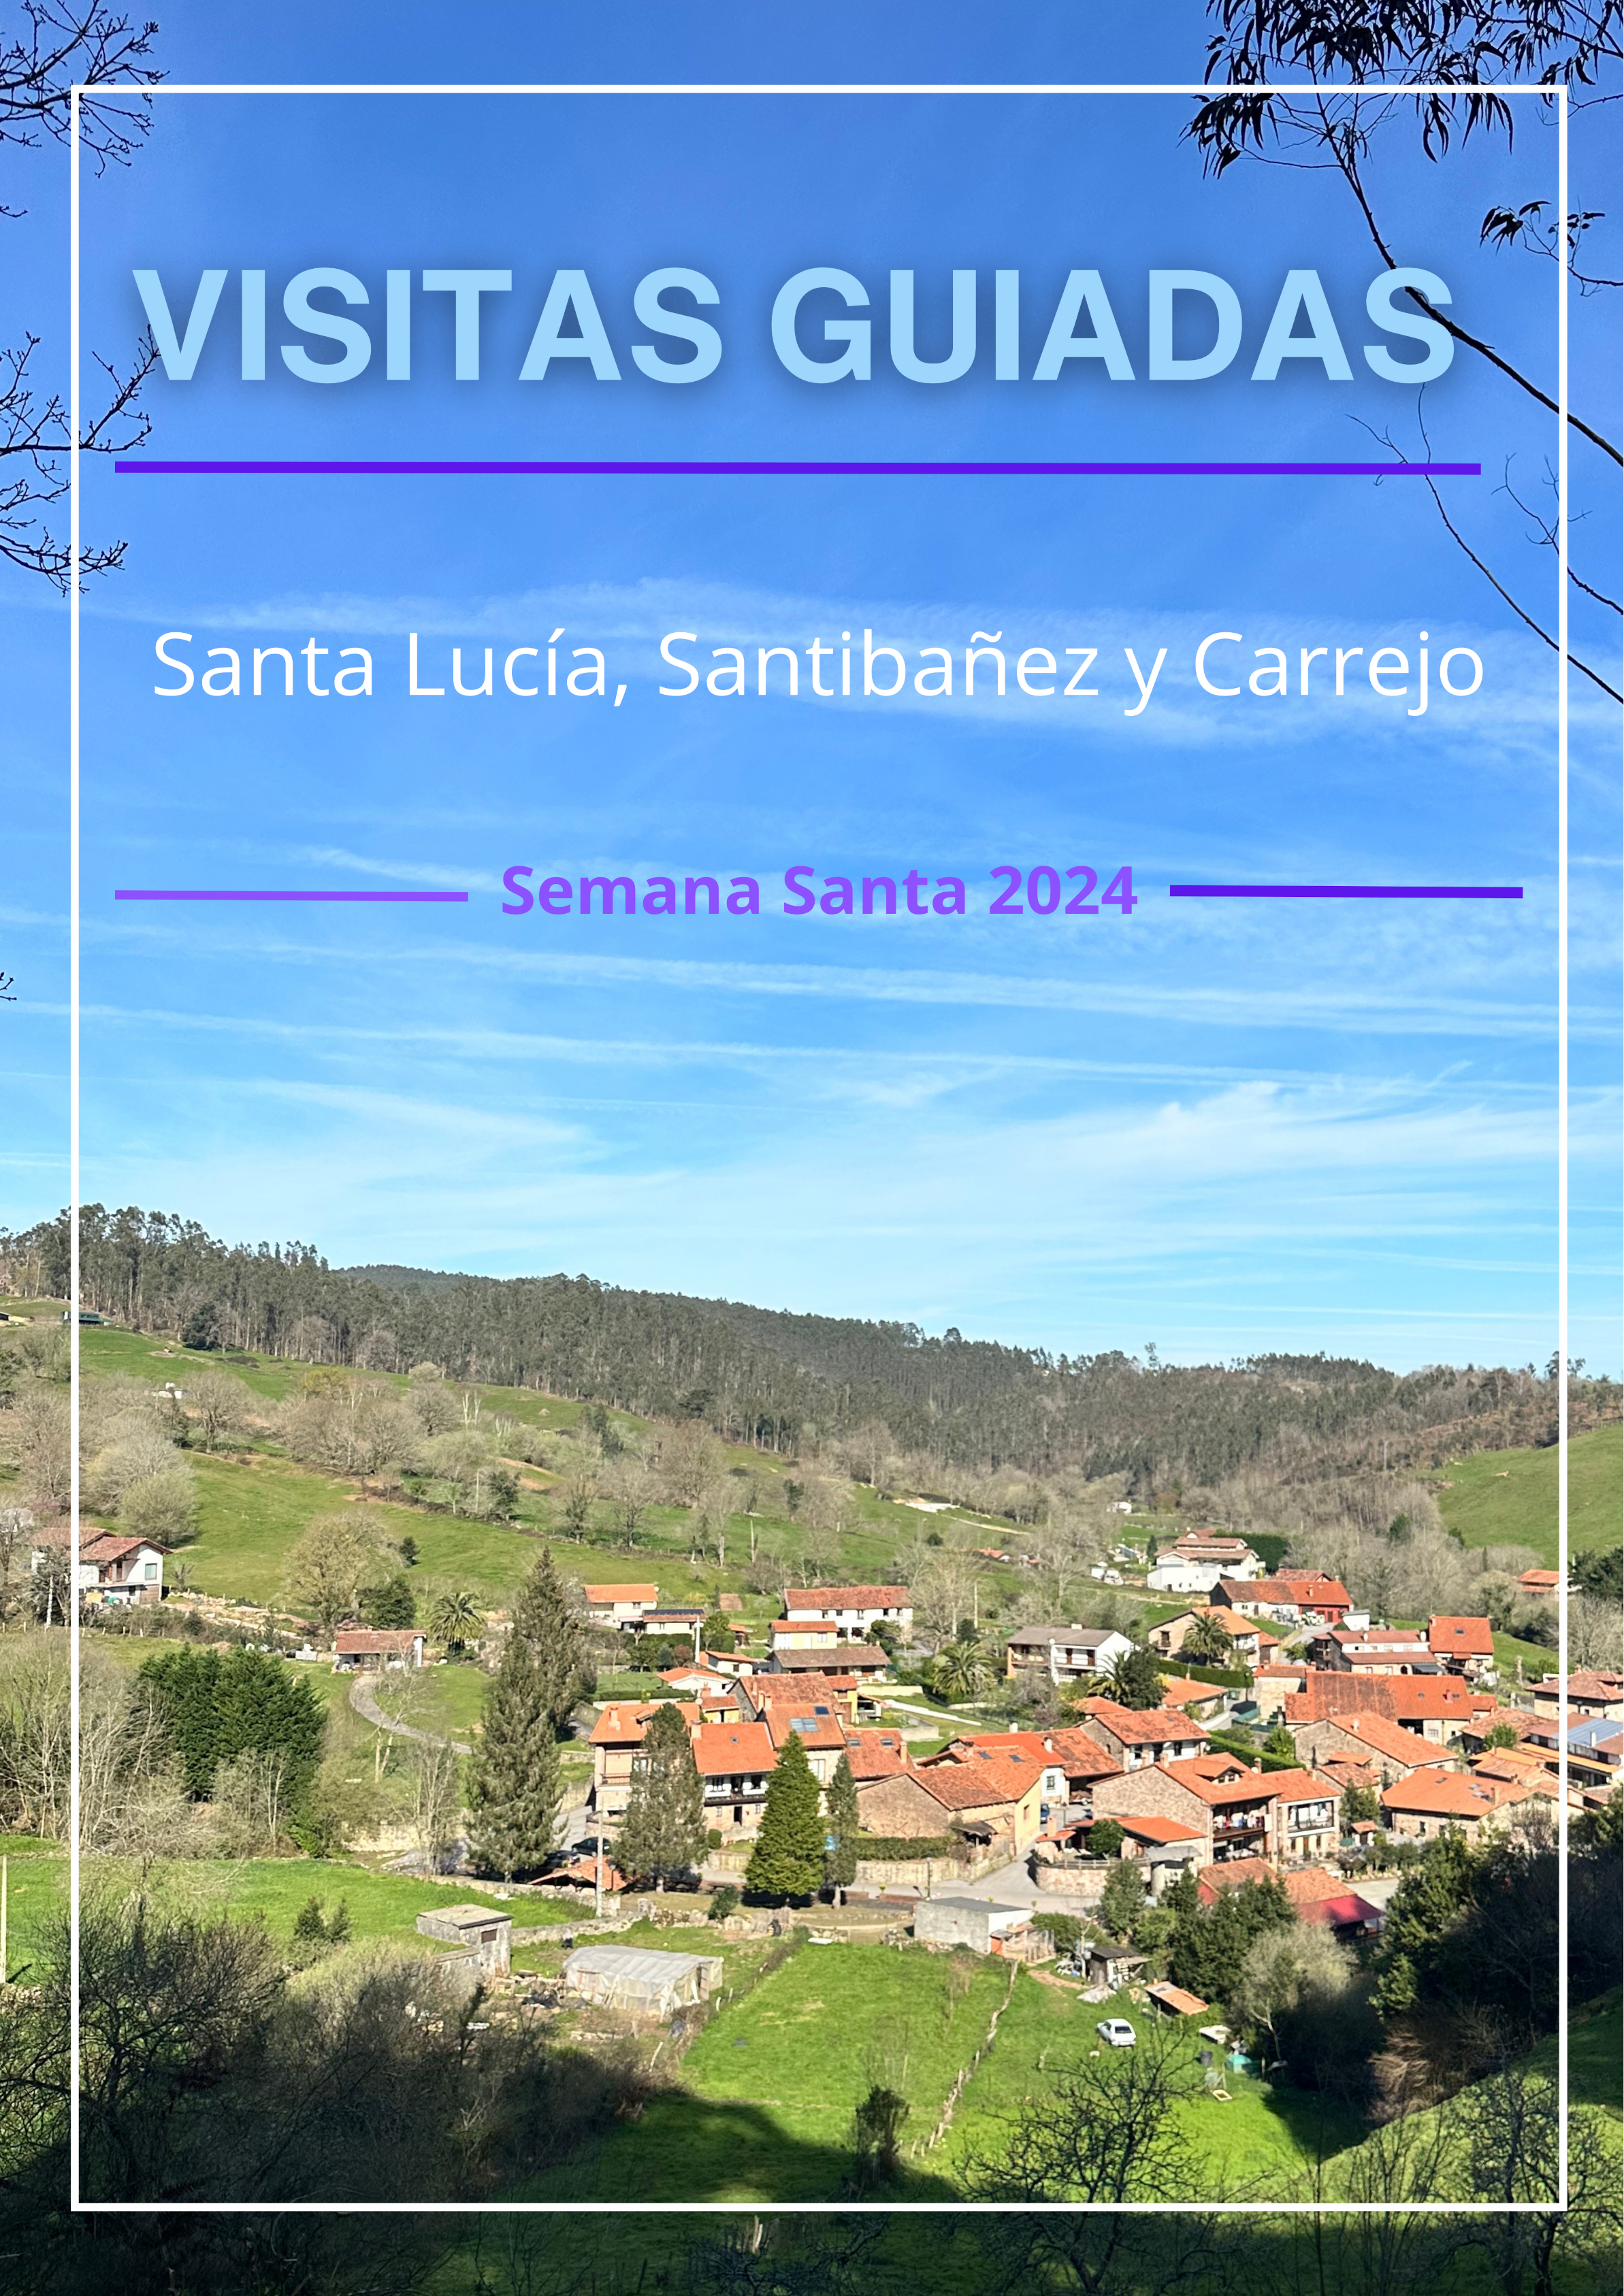 Visitas guiadas a Carrejo y Santibañez. Semana Santa 2024